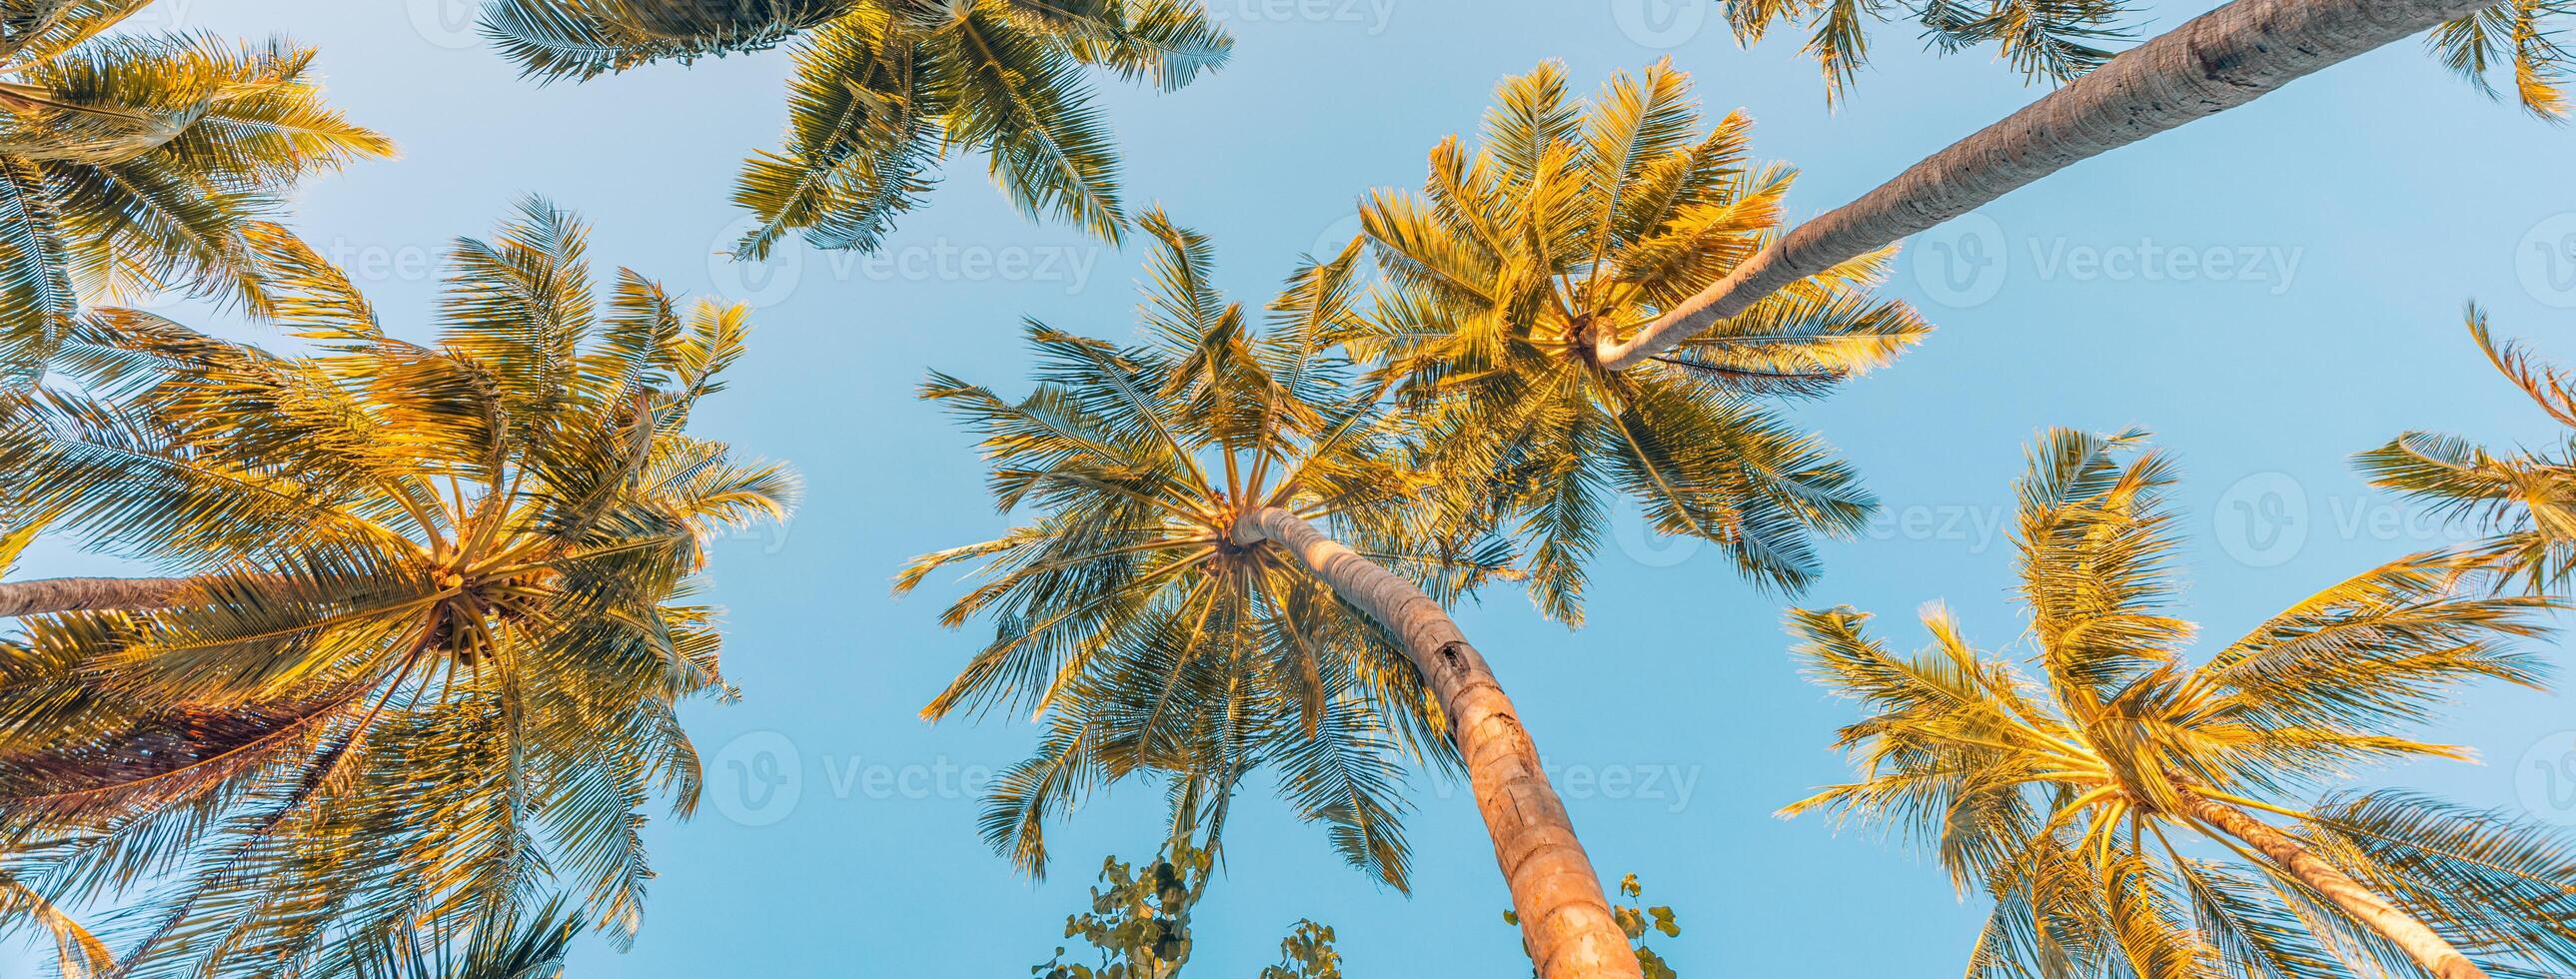 sommar semester baner. romantisk vibrafon av tropisk handflatan träd solljus på himmel bakgrund. utomhus- solnedgång exotisk lövverk närbild natur landskap. kokos handflatan träd lysande Sol över ljus himmel panorama foto